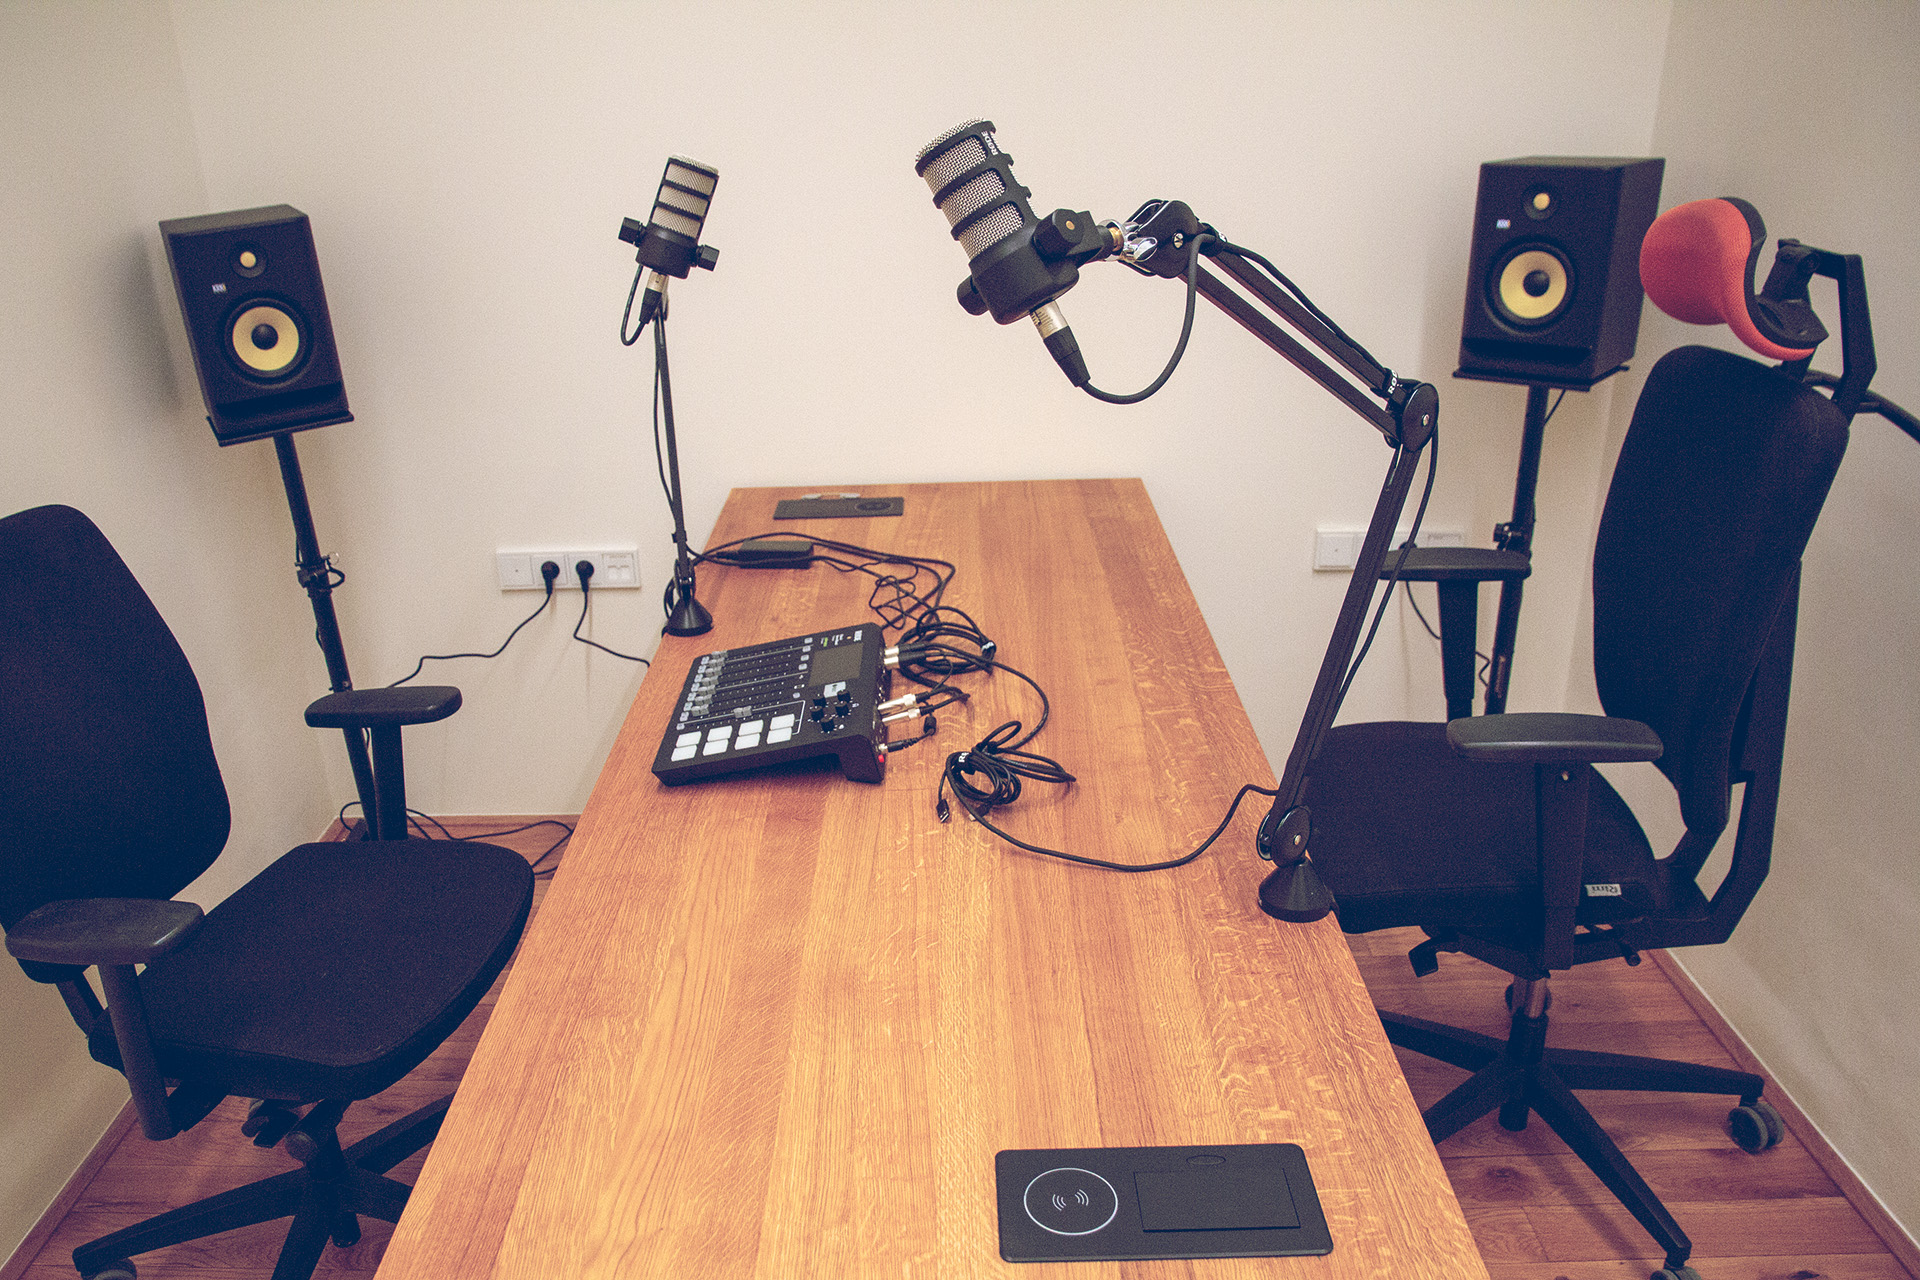 Remmark buduje vlastní podcastové studio!